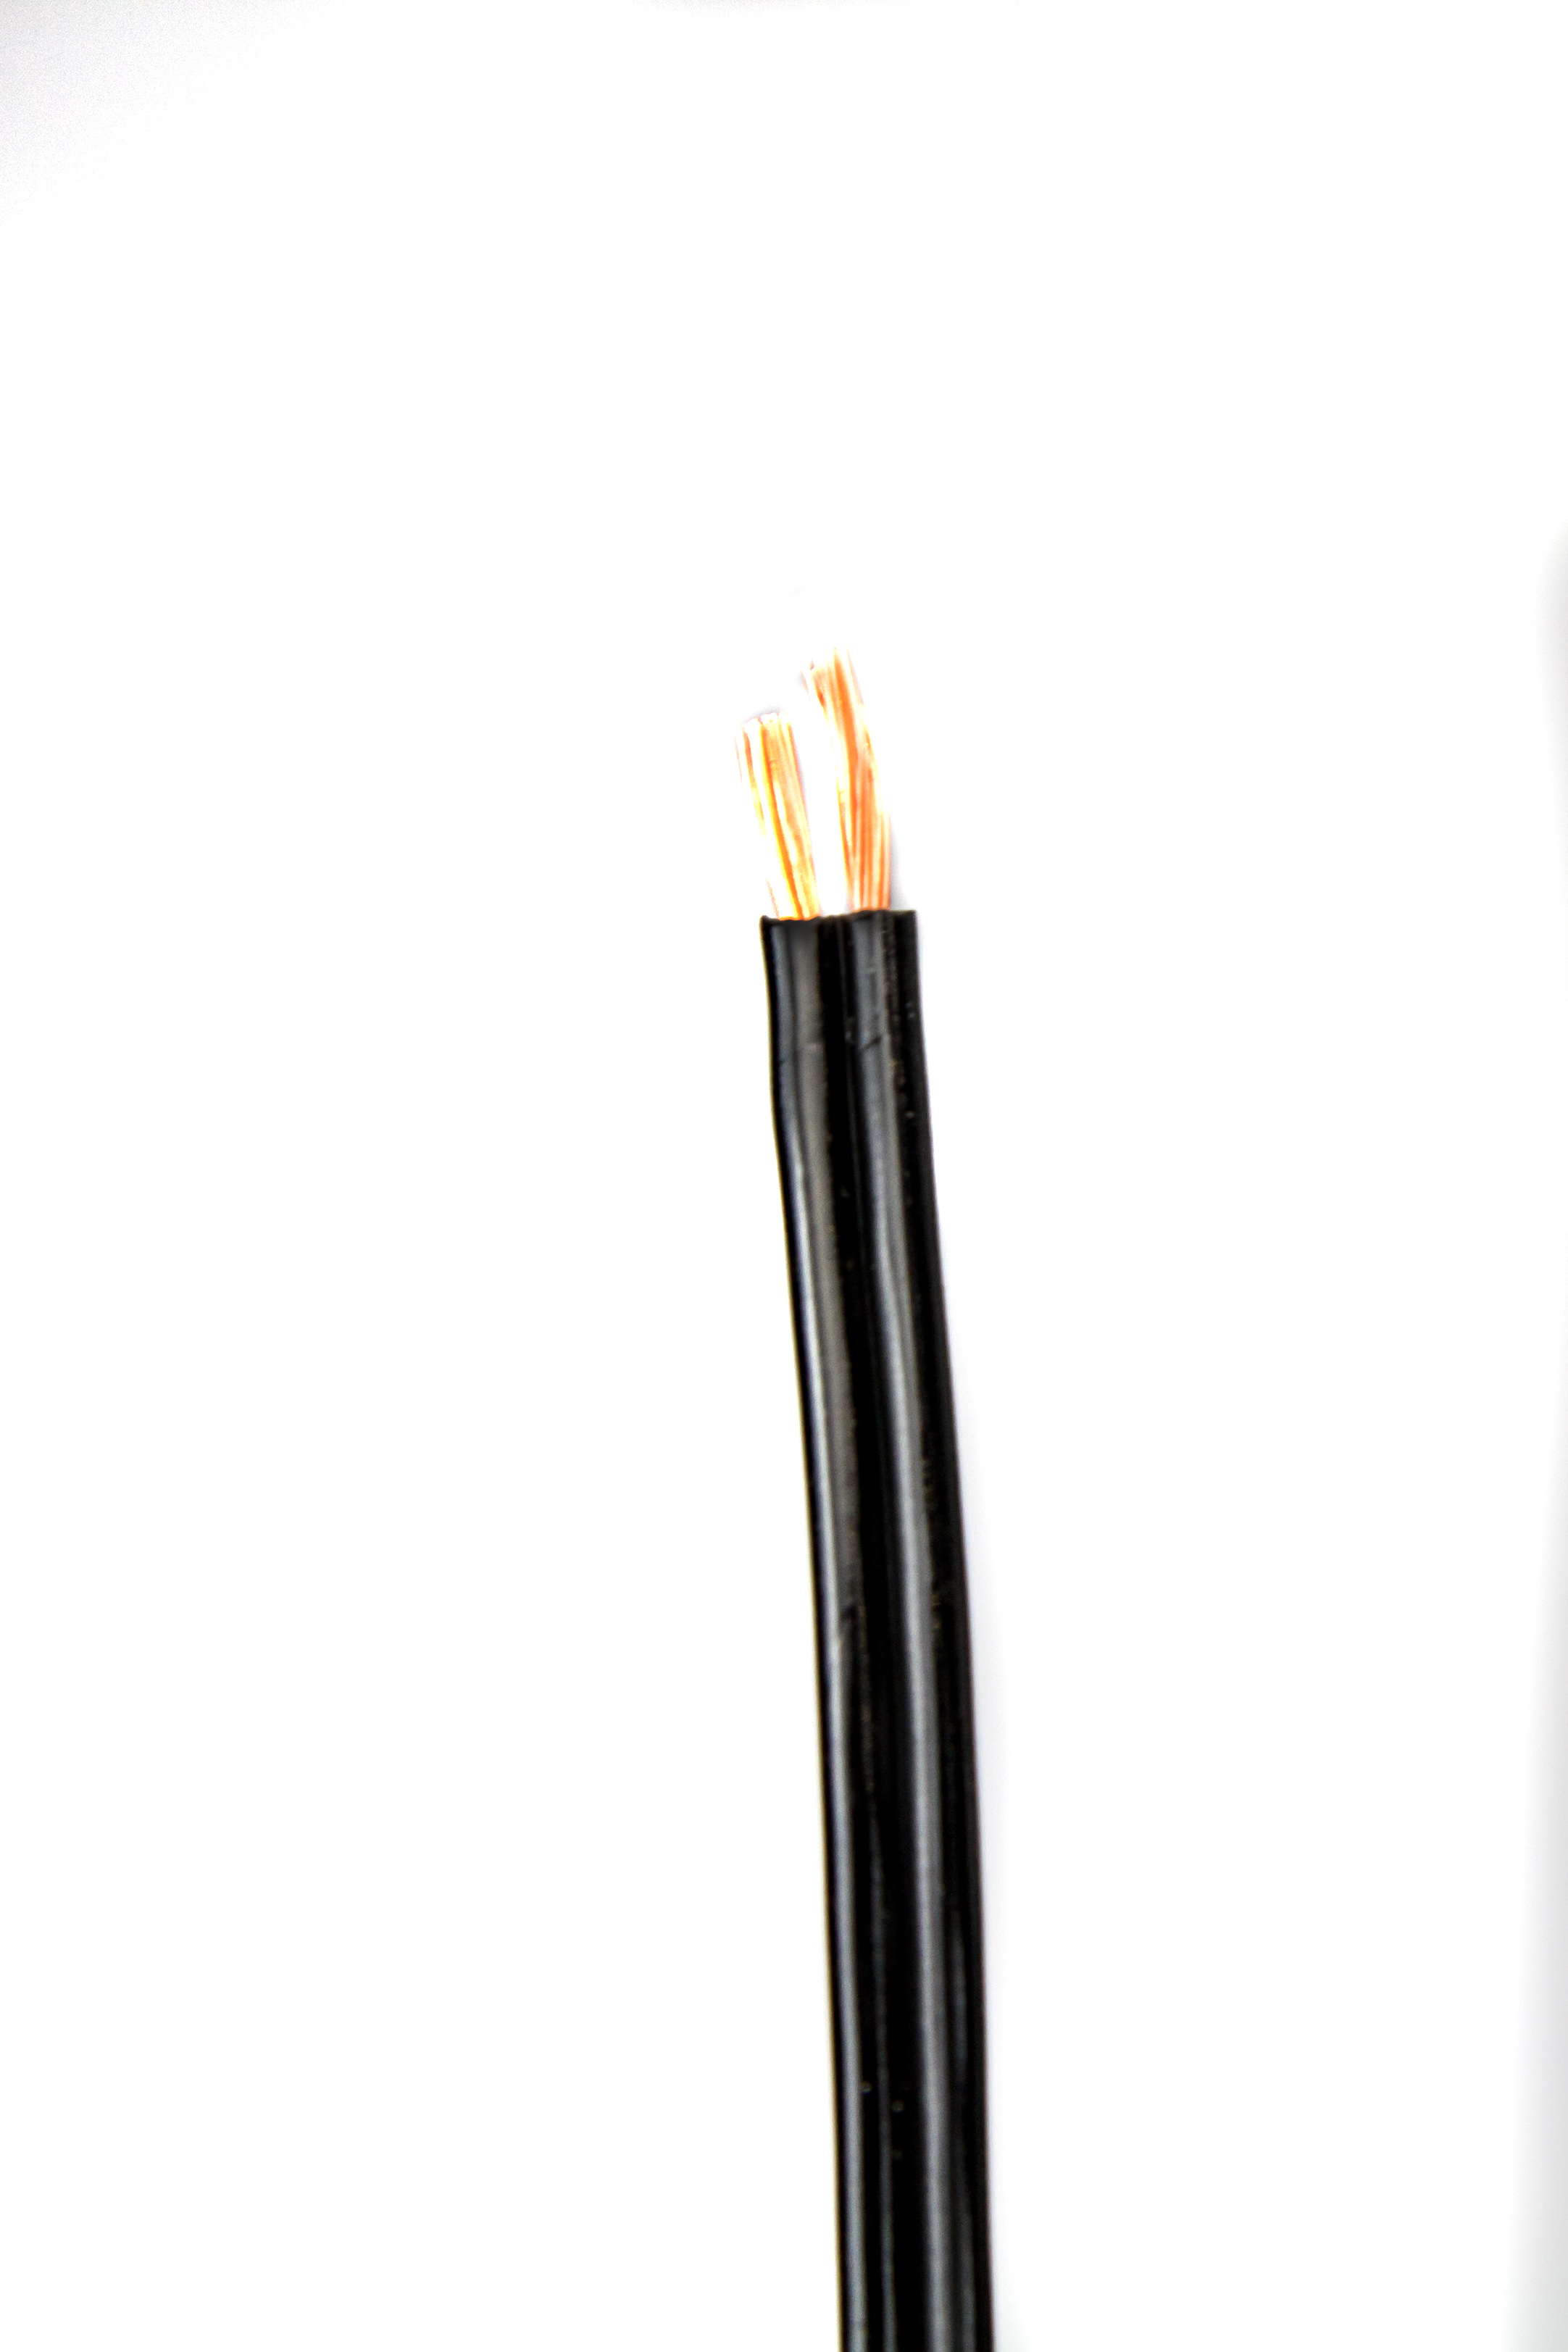 Zwillingslitze 2x 0,75 qmm, LIYZ schwarz, 2-adriges Kabel, flexibles  Litzenkabel, Lautsprecherkabel, Kabel / Stecker / Zubehör, Abverkauf, SHOWTECHNIK